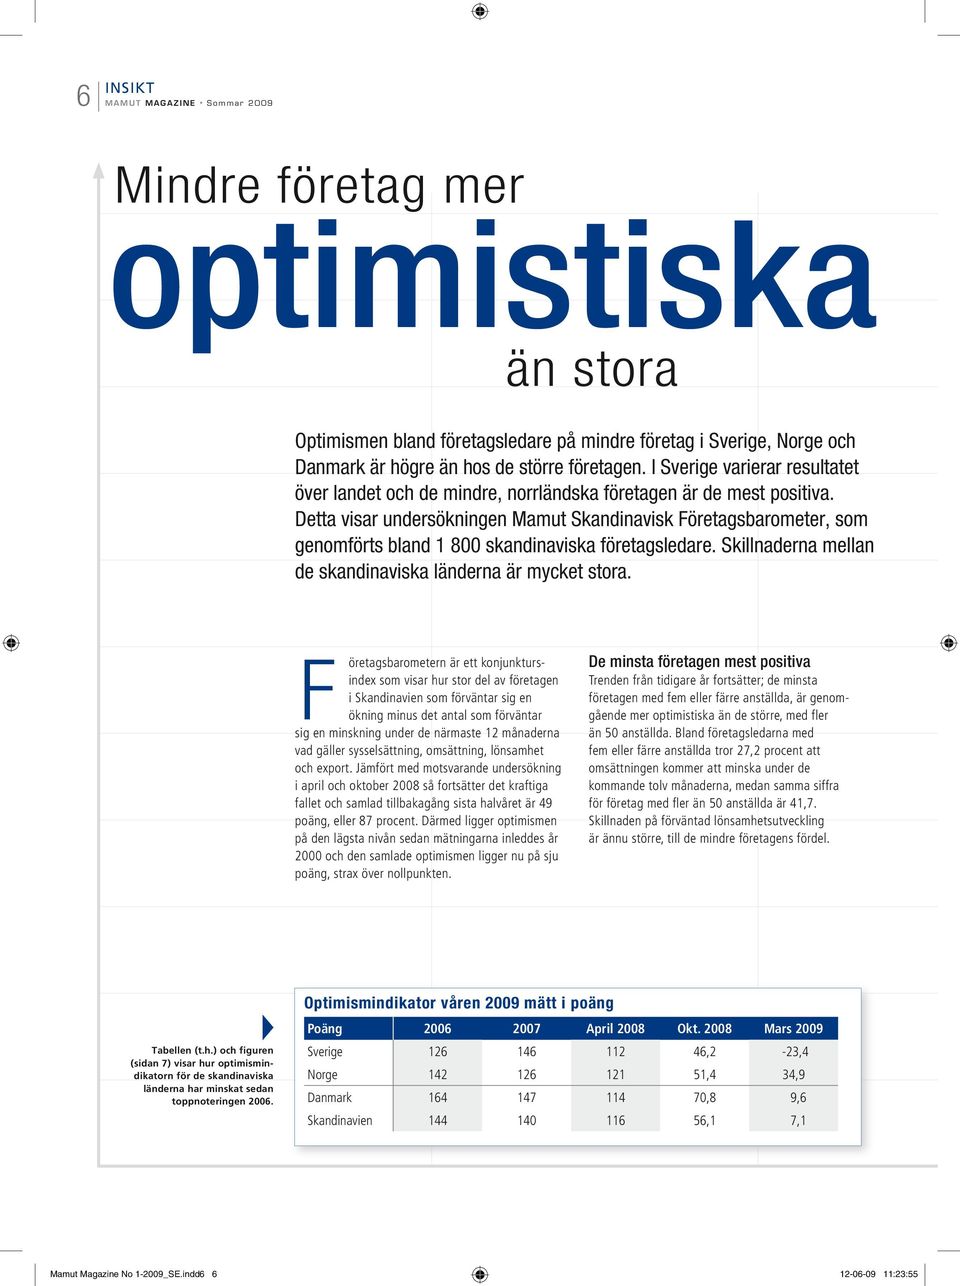 Detta visar undersökningen Mamut Skandinavisk Företagsbarometer, som genomförts bland 1 800 skandinaviska företagsledare. Skillnaderna mellan de skandinaviska länderna är mycket stora.